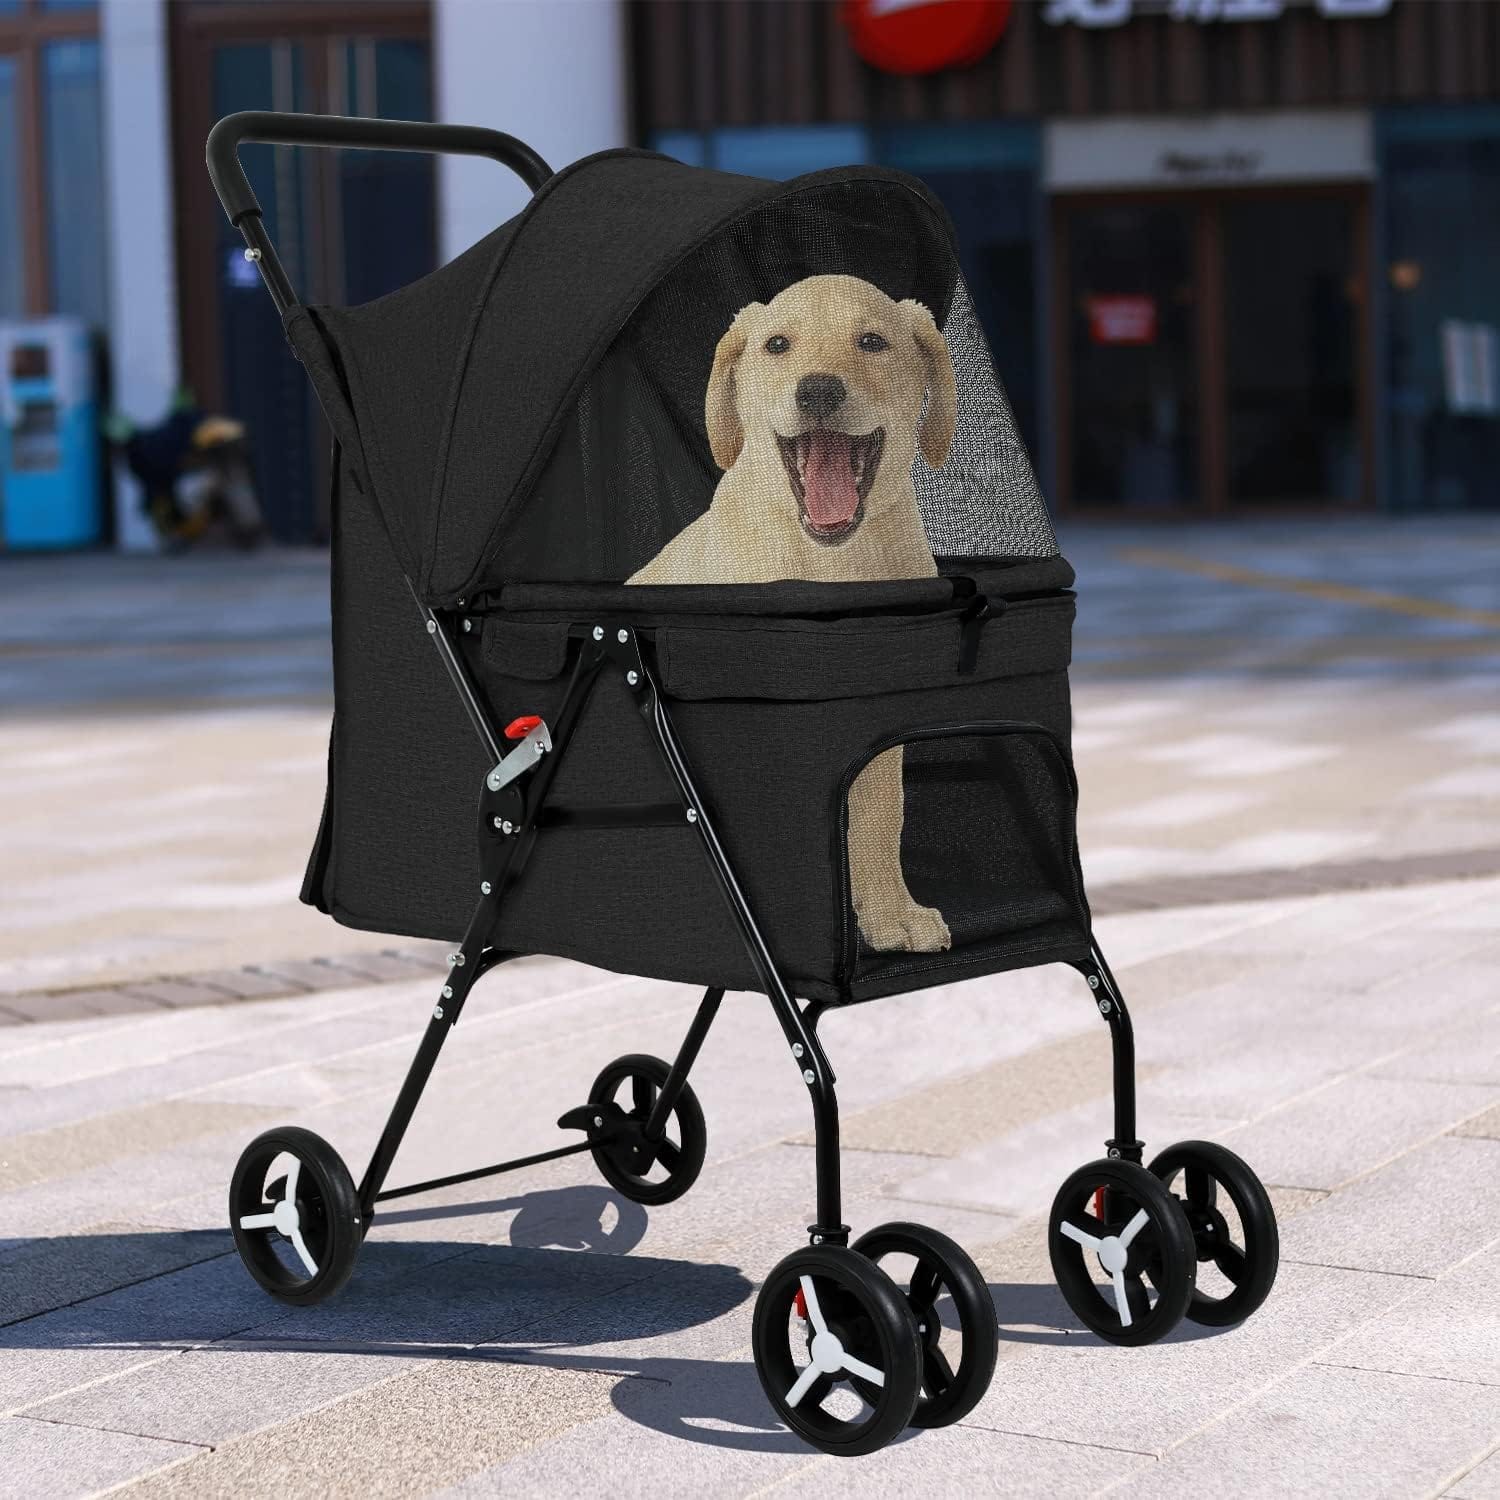 BestPet Pet Stroller Review